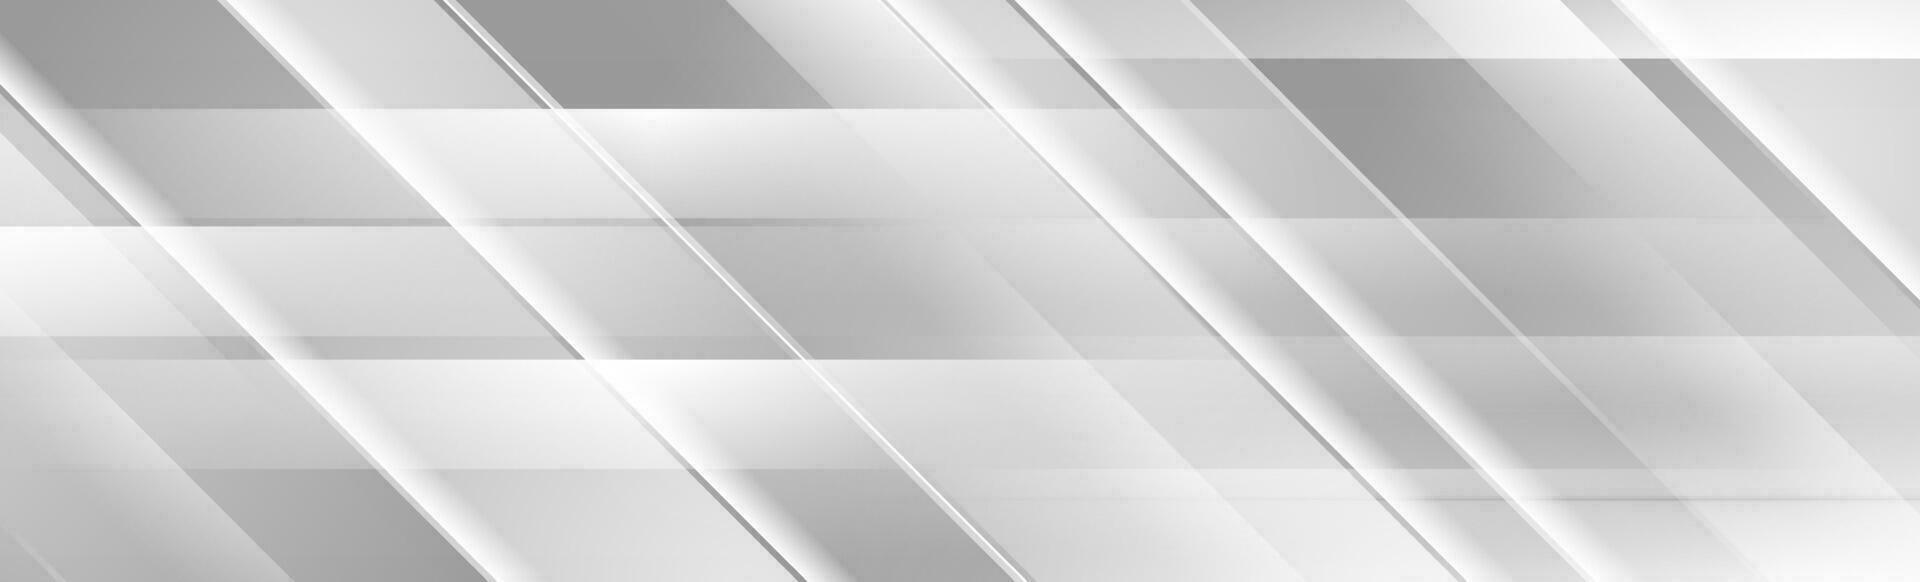 Silver grey geometric abstract tech banner design vector